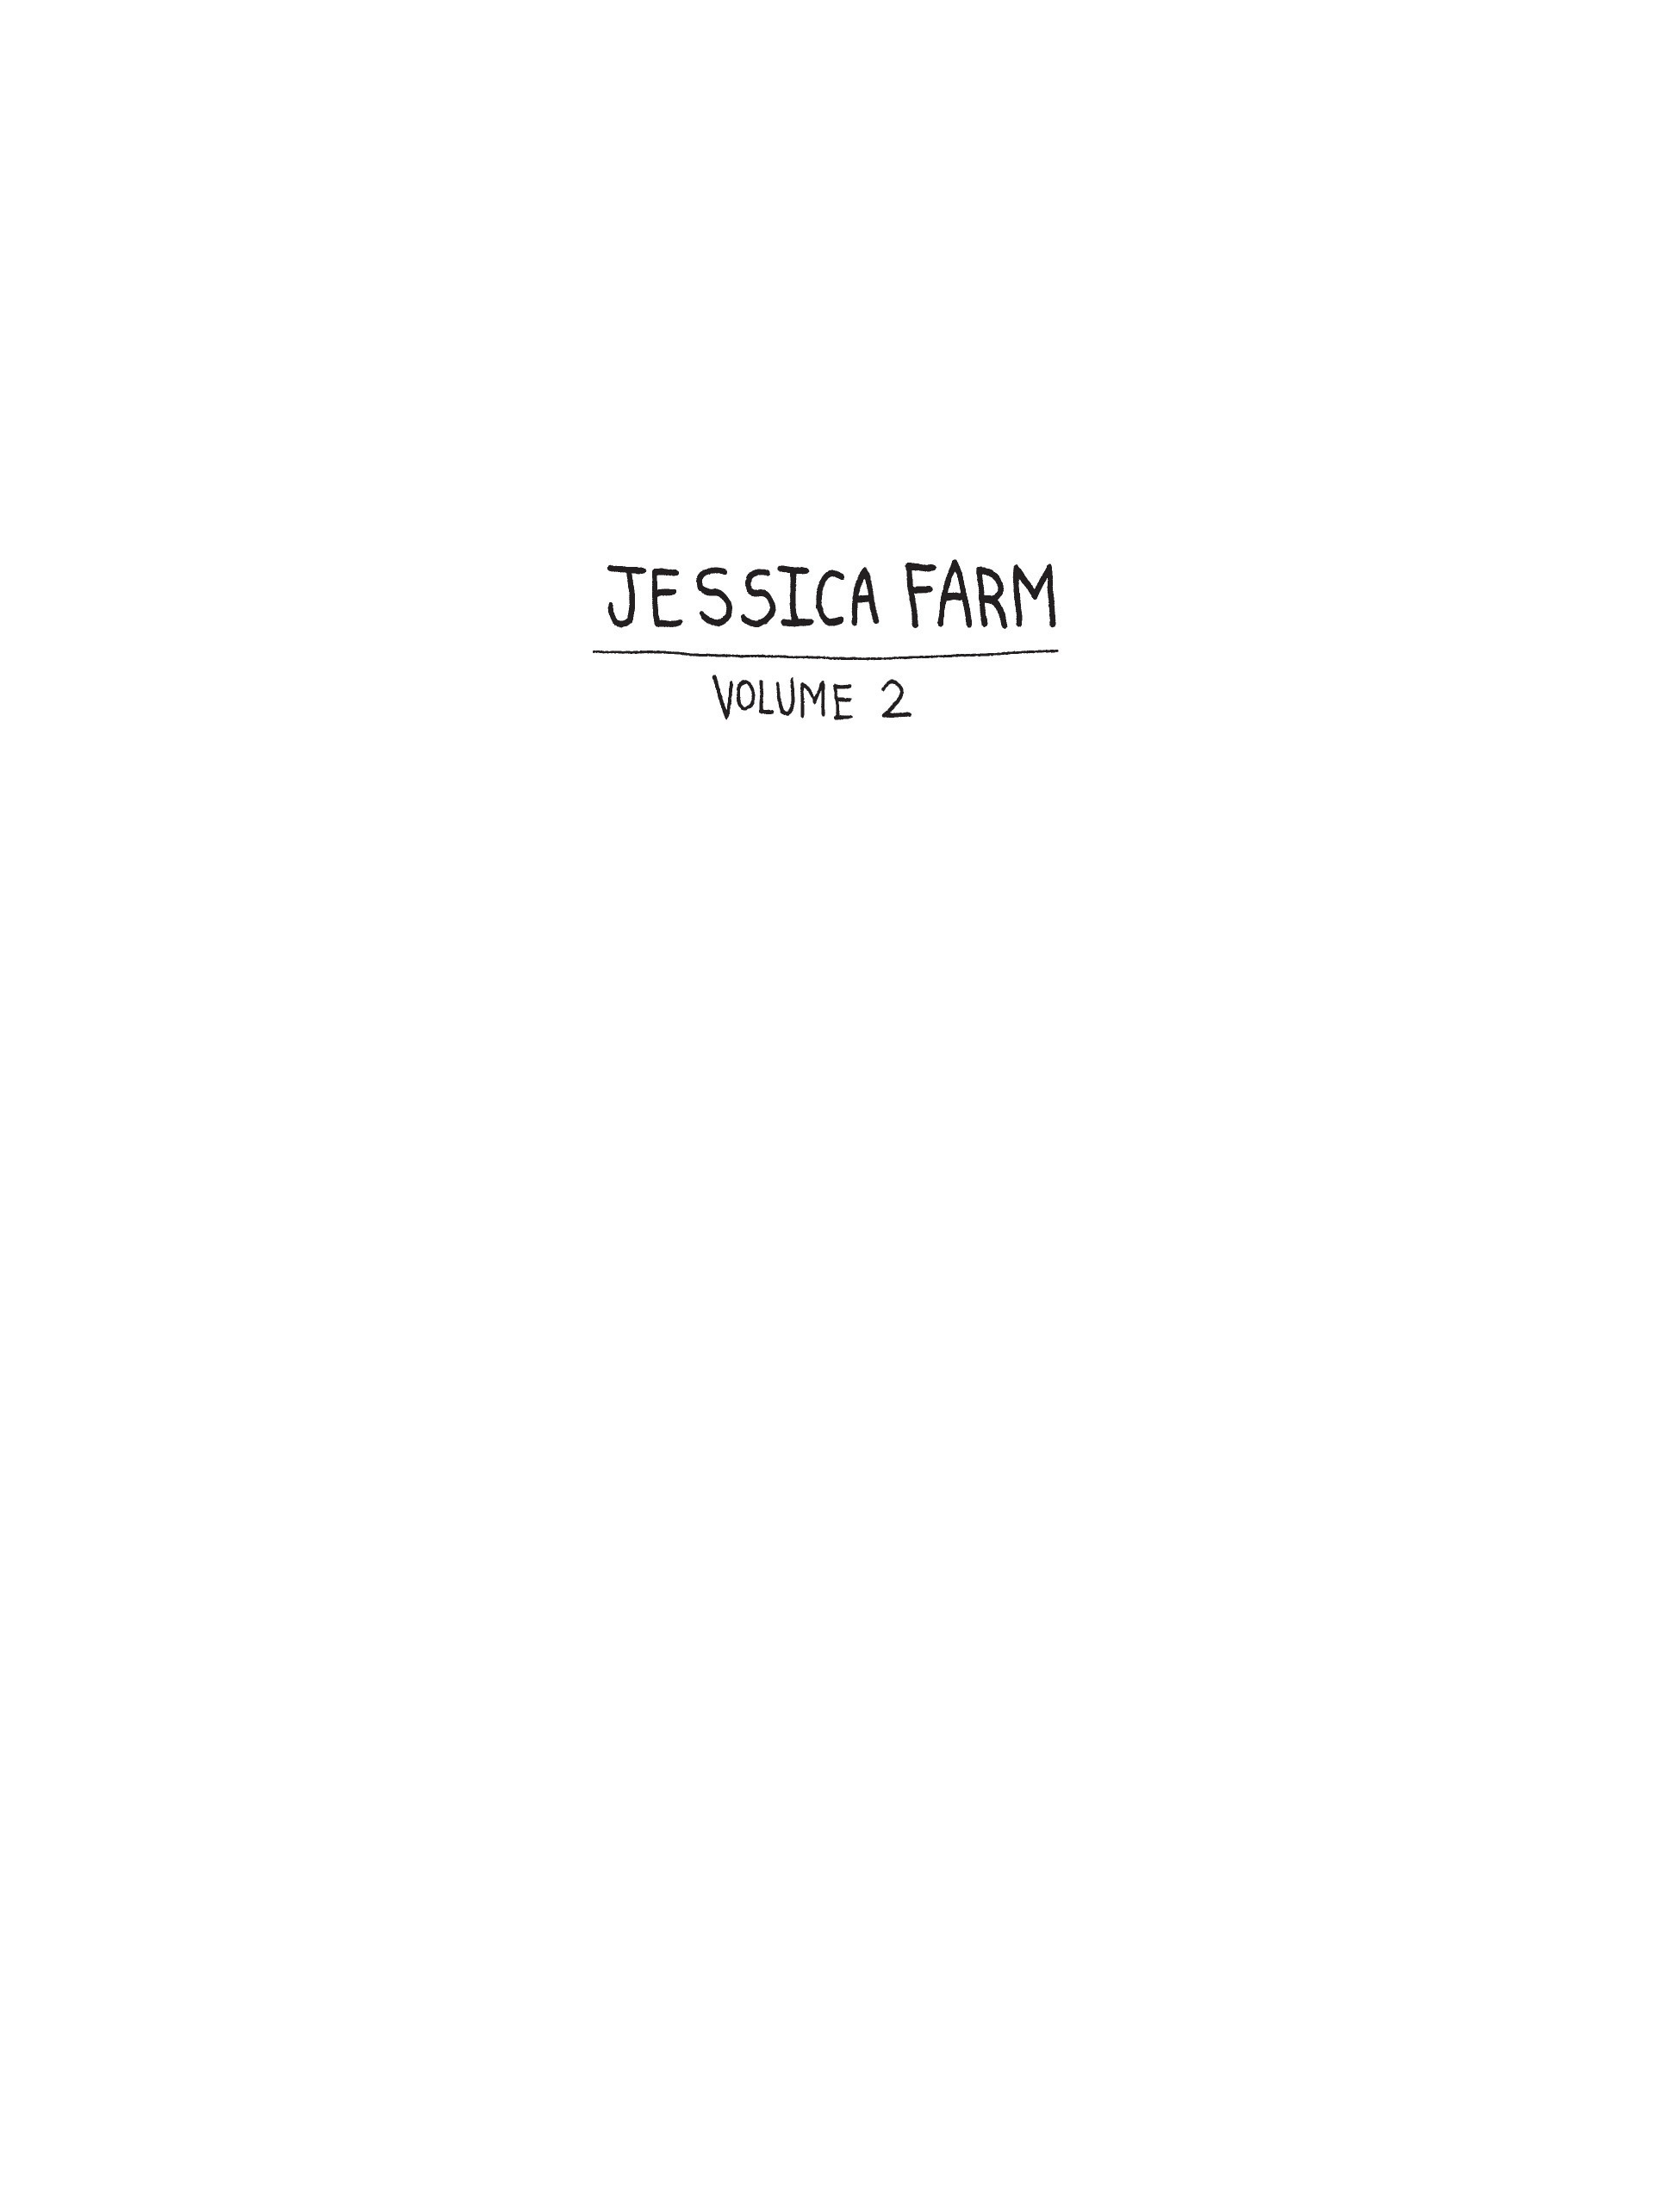 Read online Jessica Farm comic -  Issue # TPB 2 - 2